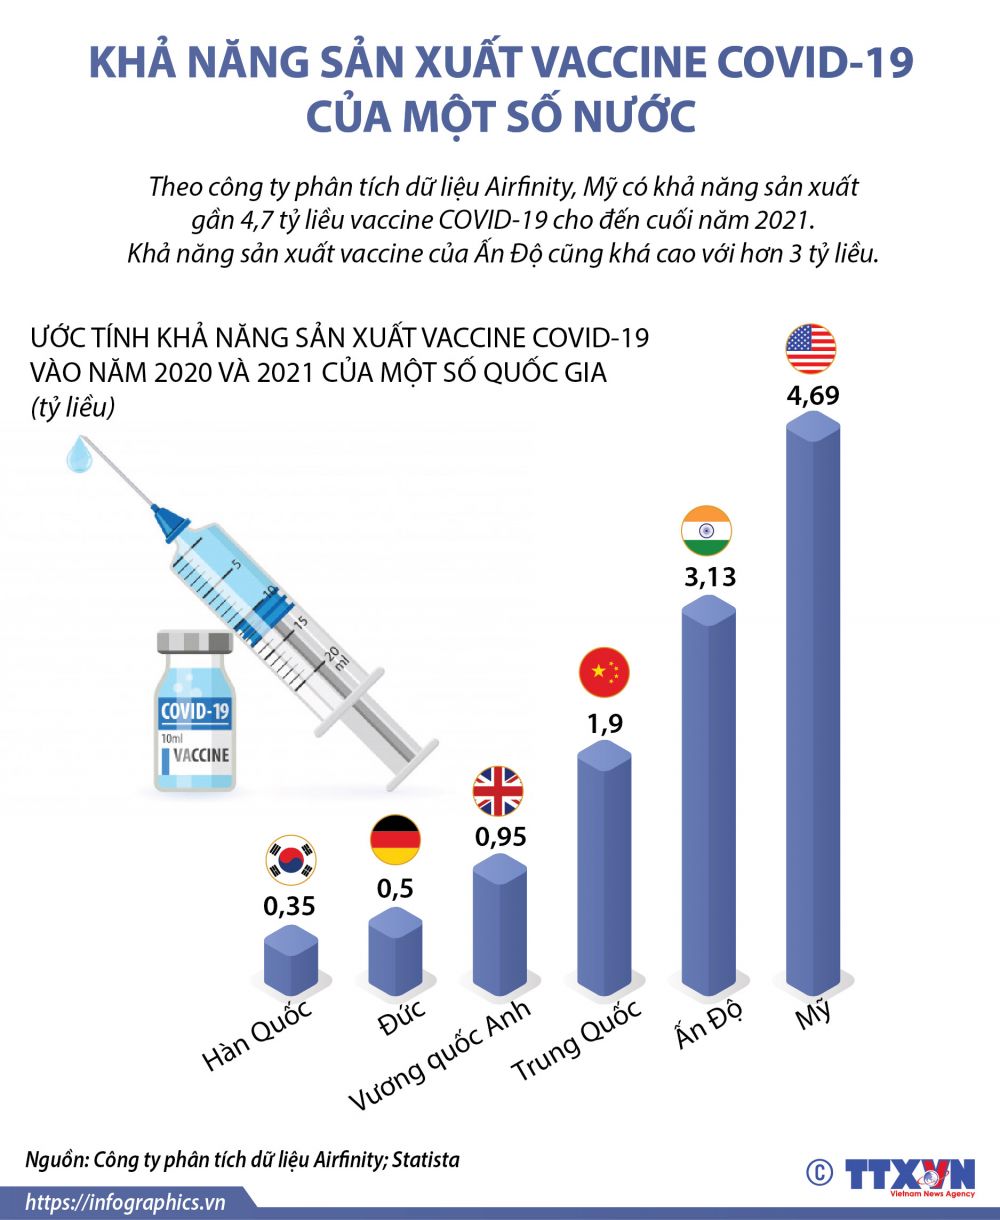 Mỹ có khả năng sản xuất vaccine Covid-19 cao nhất thế giới